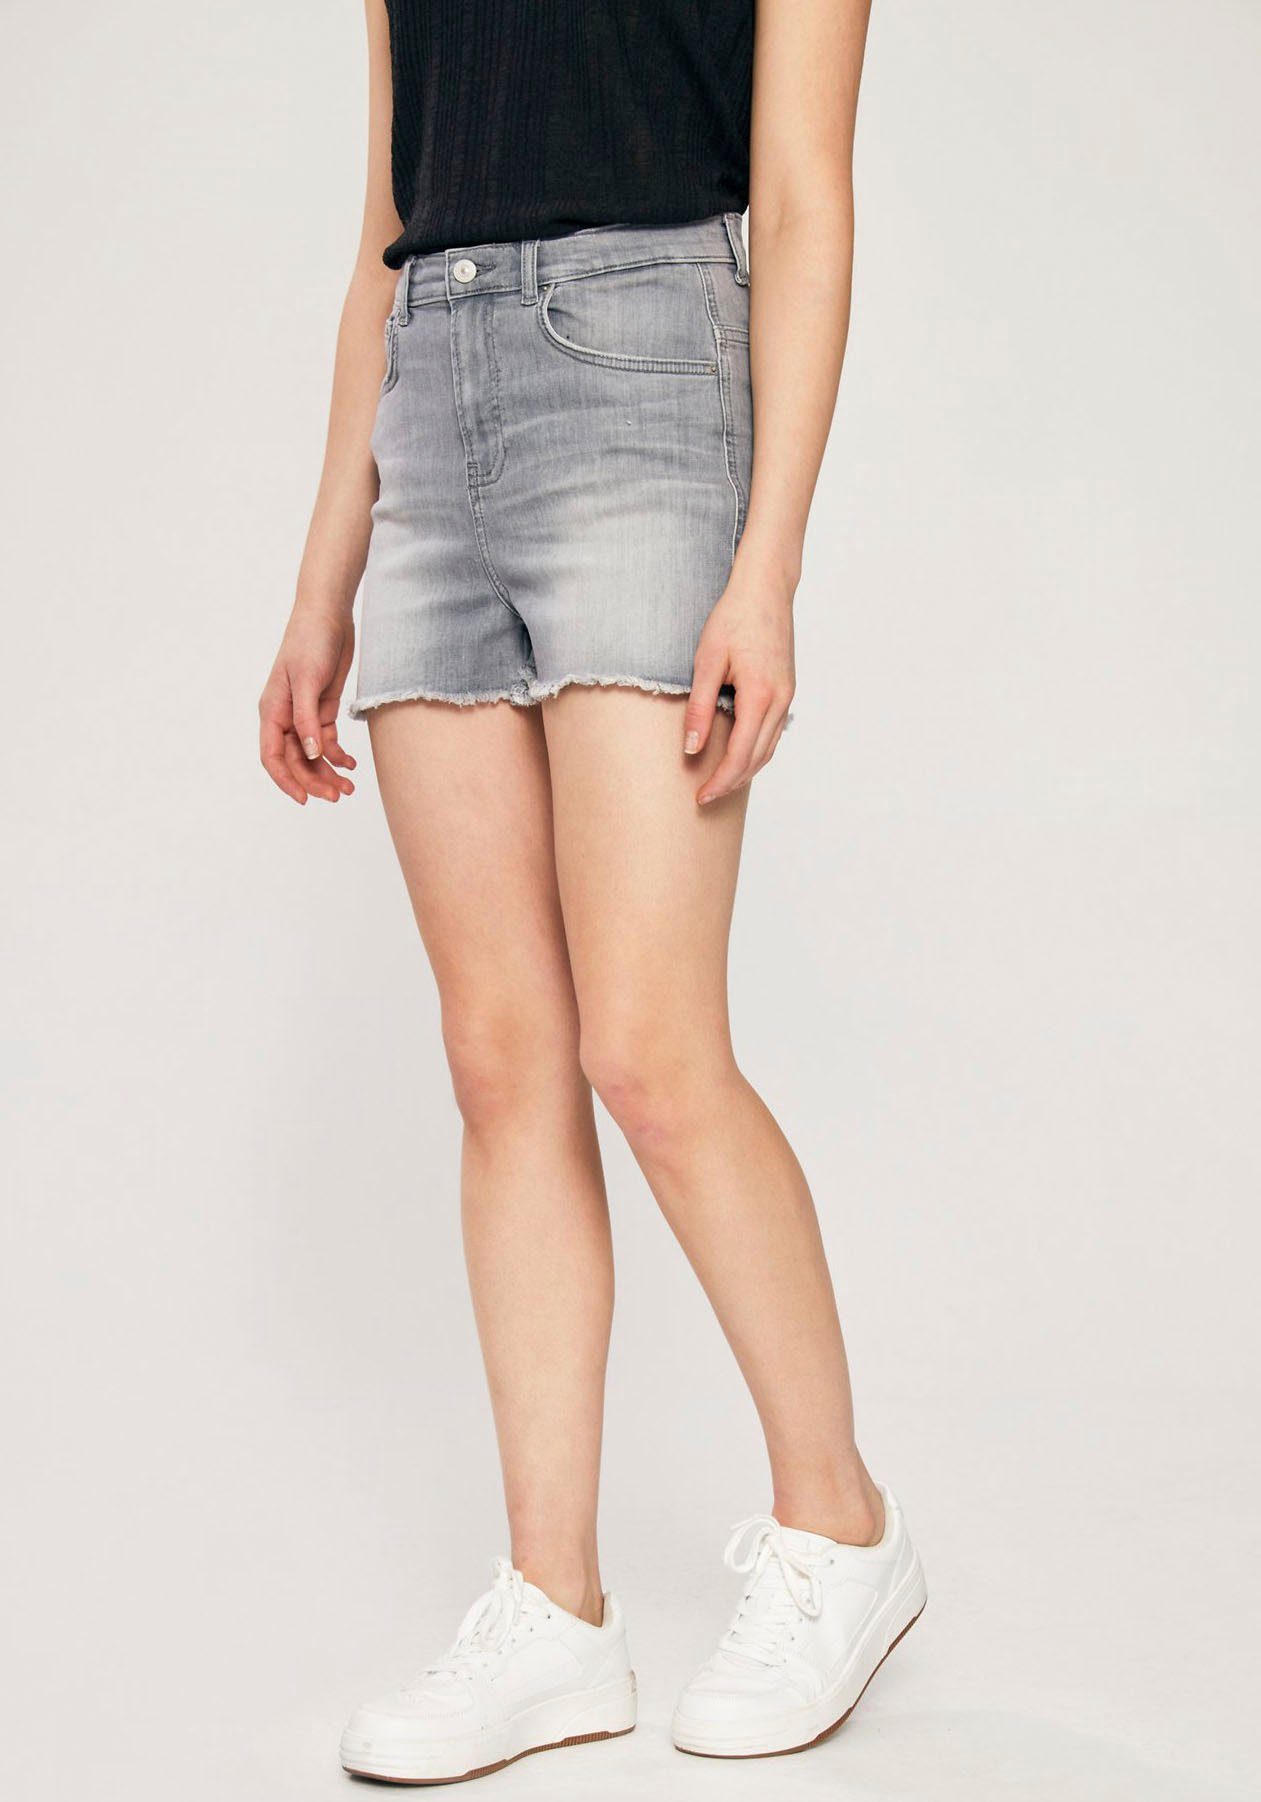 Graue Jeans Shorts online kaufen | OTTO